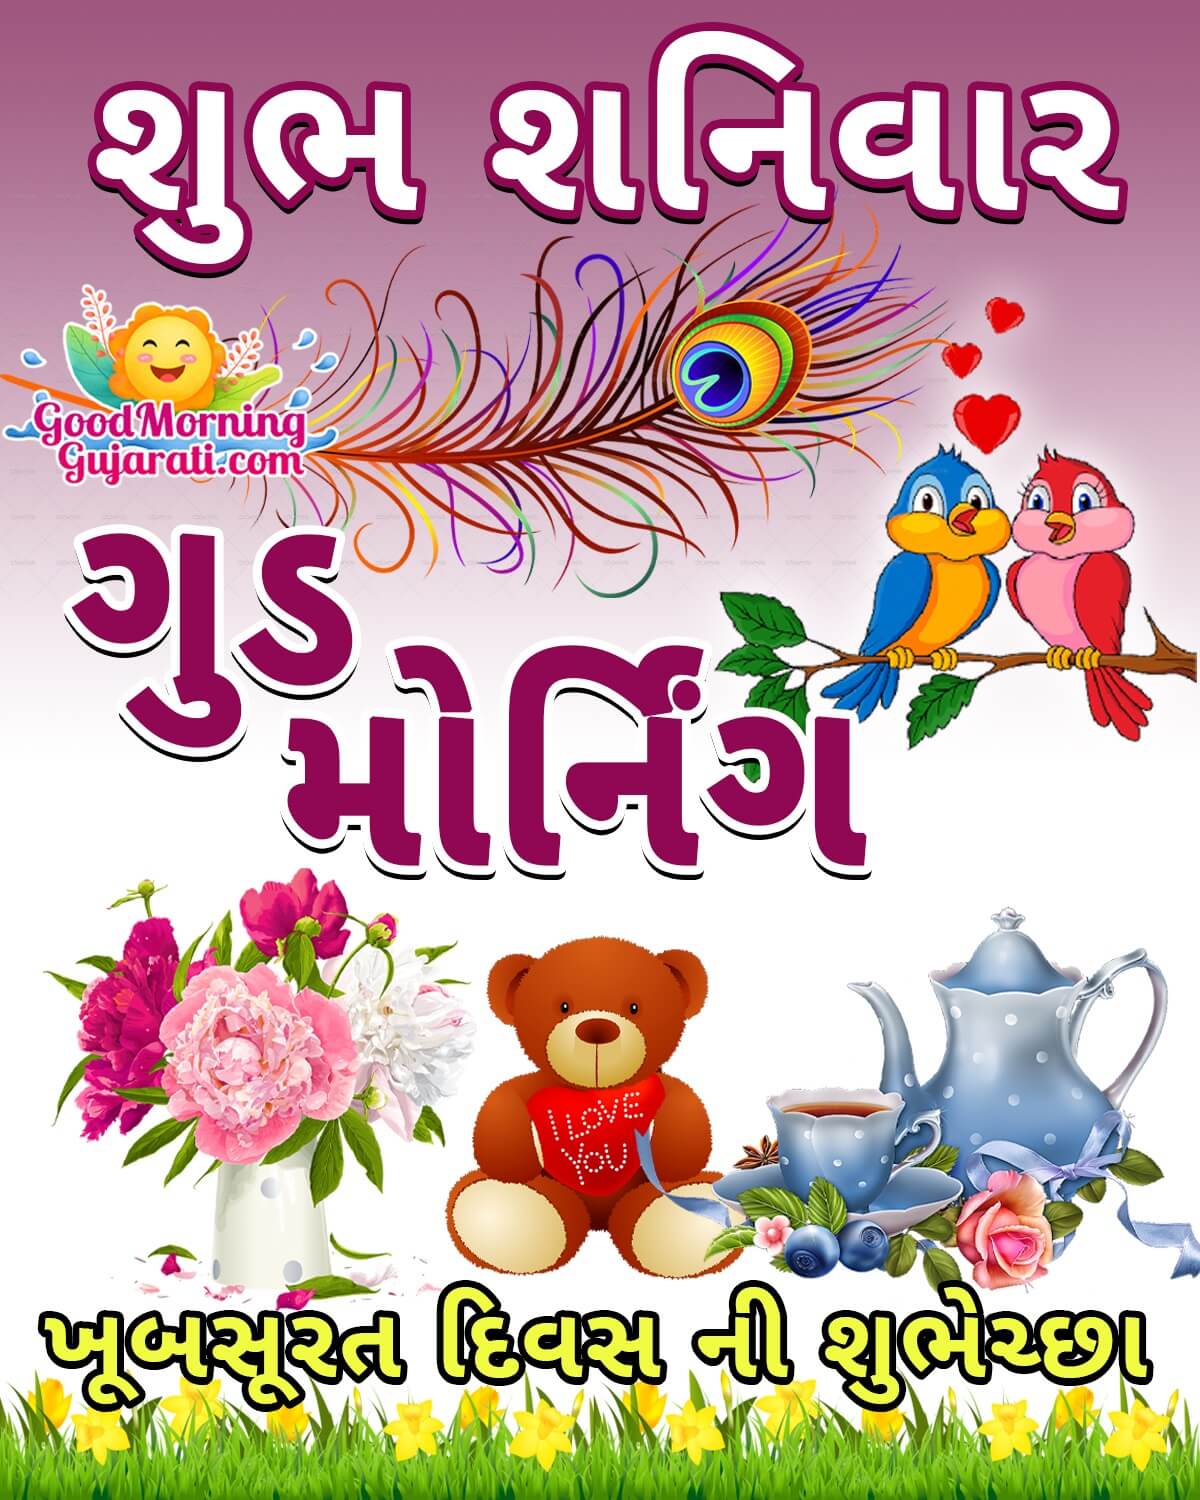 Shubh Shaniwar Good Morning Wish